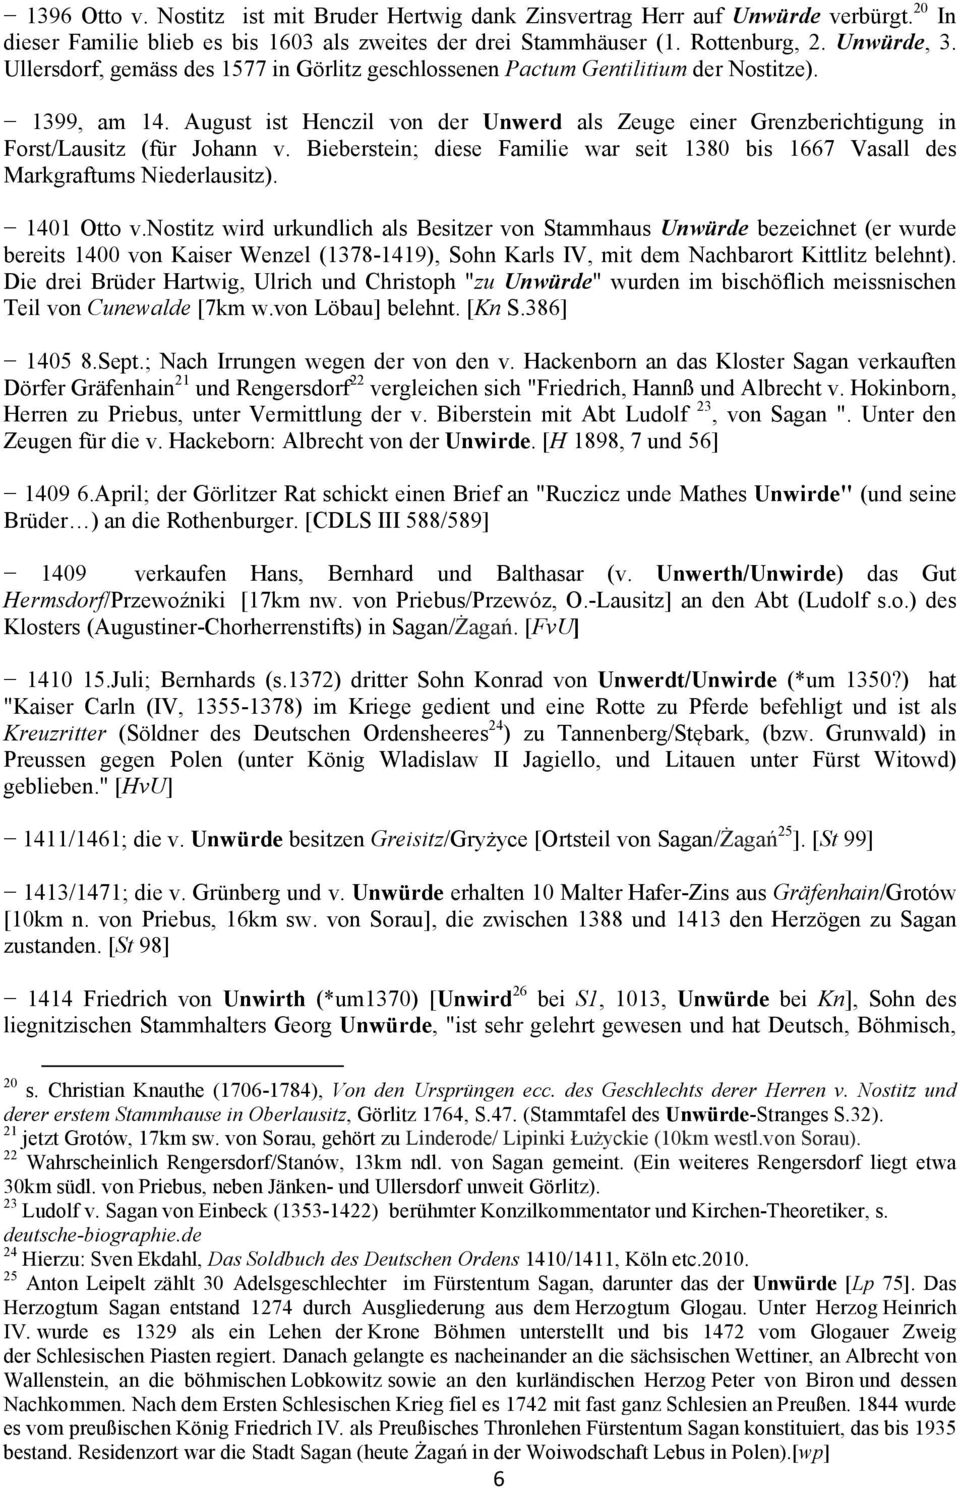 Bieberstein; diese Familie war seit 1380 bis 1667 Vasall des Markgraftums Niederlausitz). 1401 Otto v.